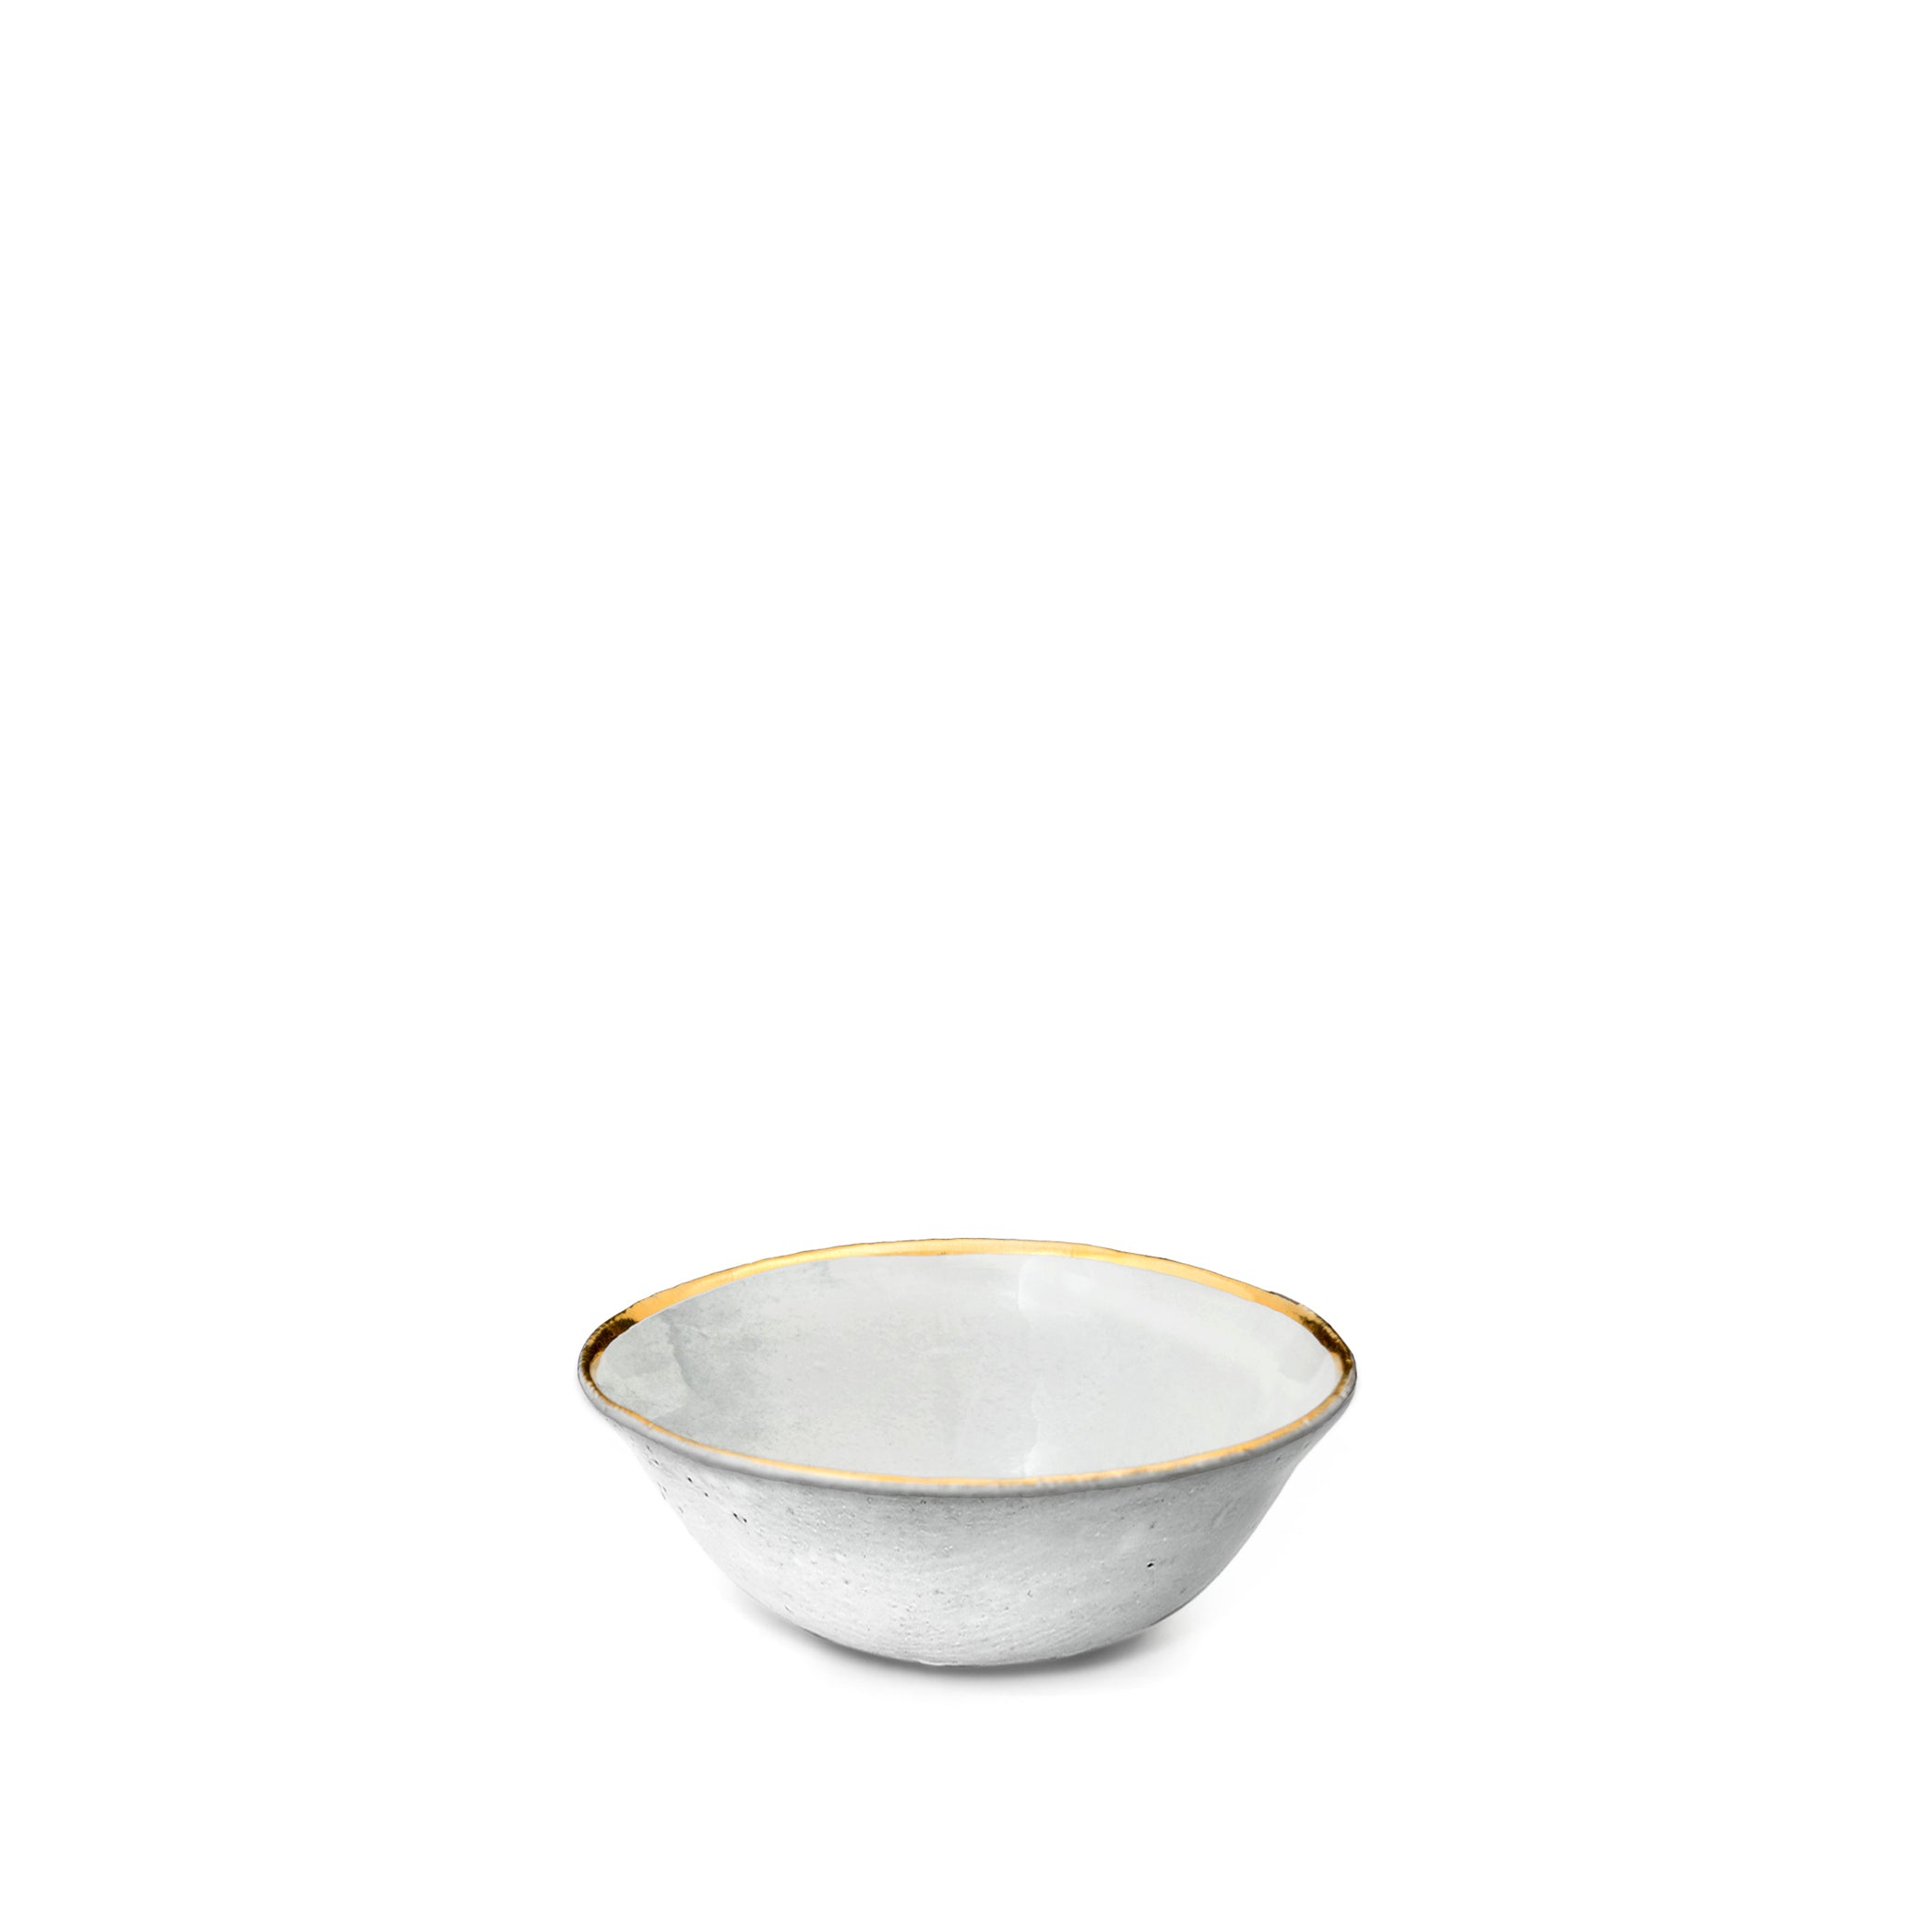 Crésus Soup Bowl with Gold Rim by Astier de Villatte, 14.5cm